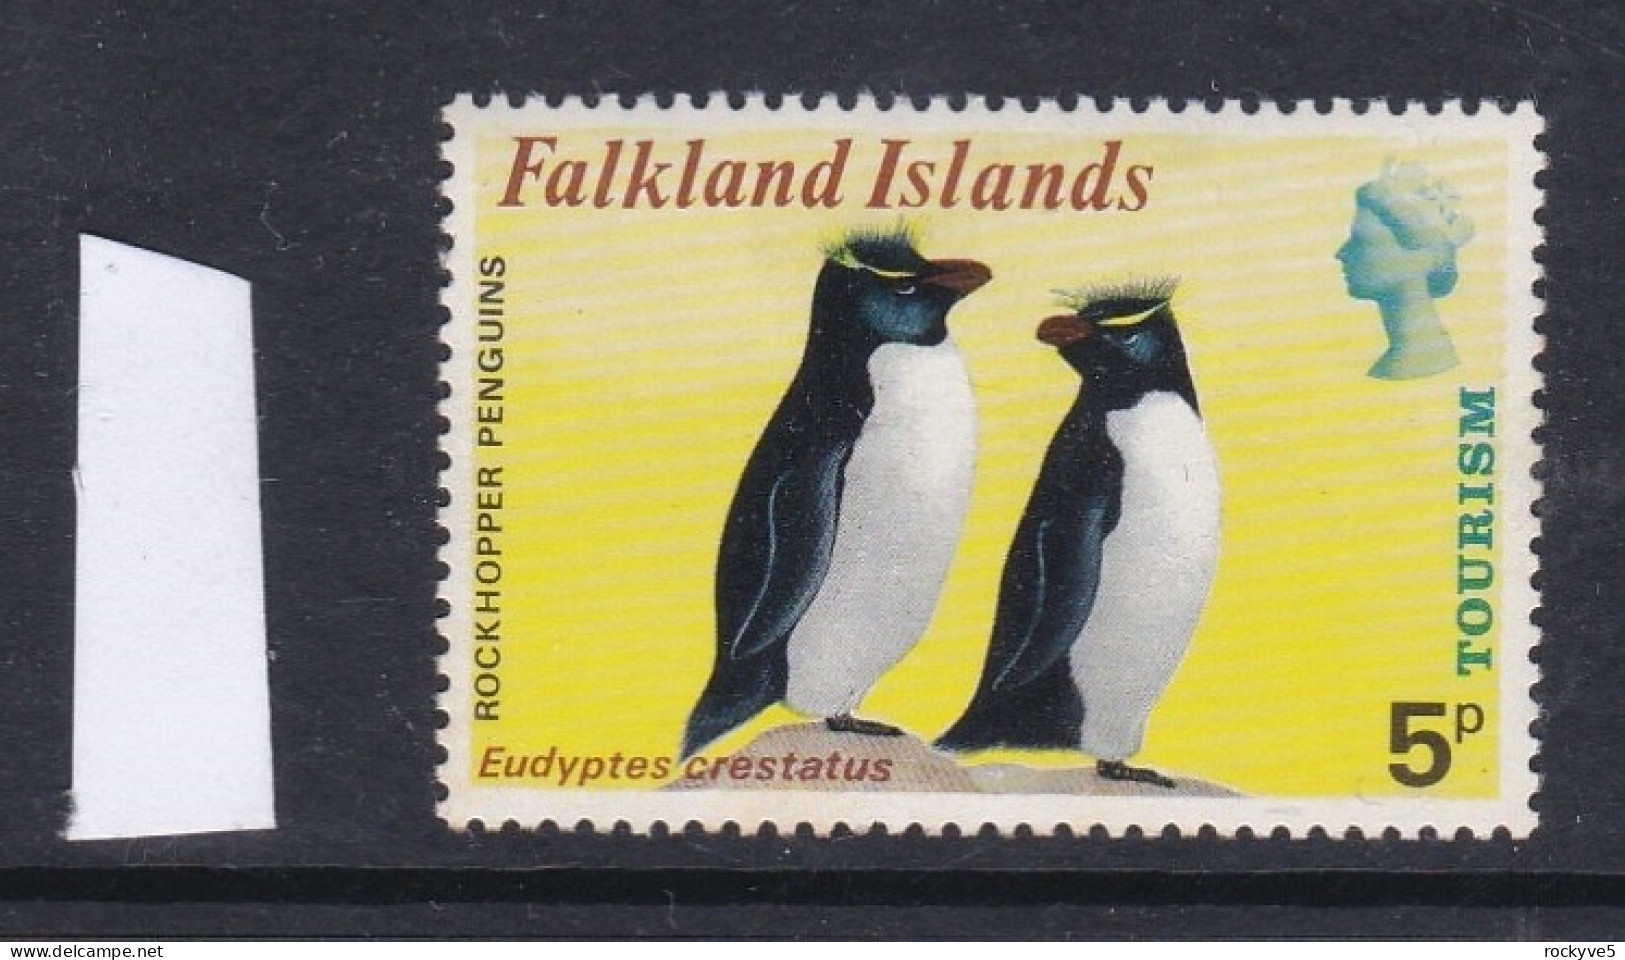 Falkland Islands 1974 Tourism 5p MNH CV £8.00 SP £2.99 - Falkland